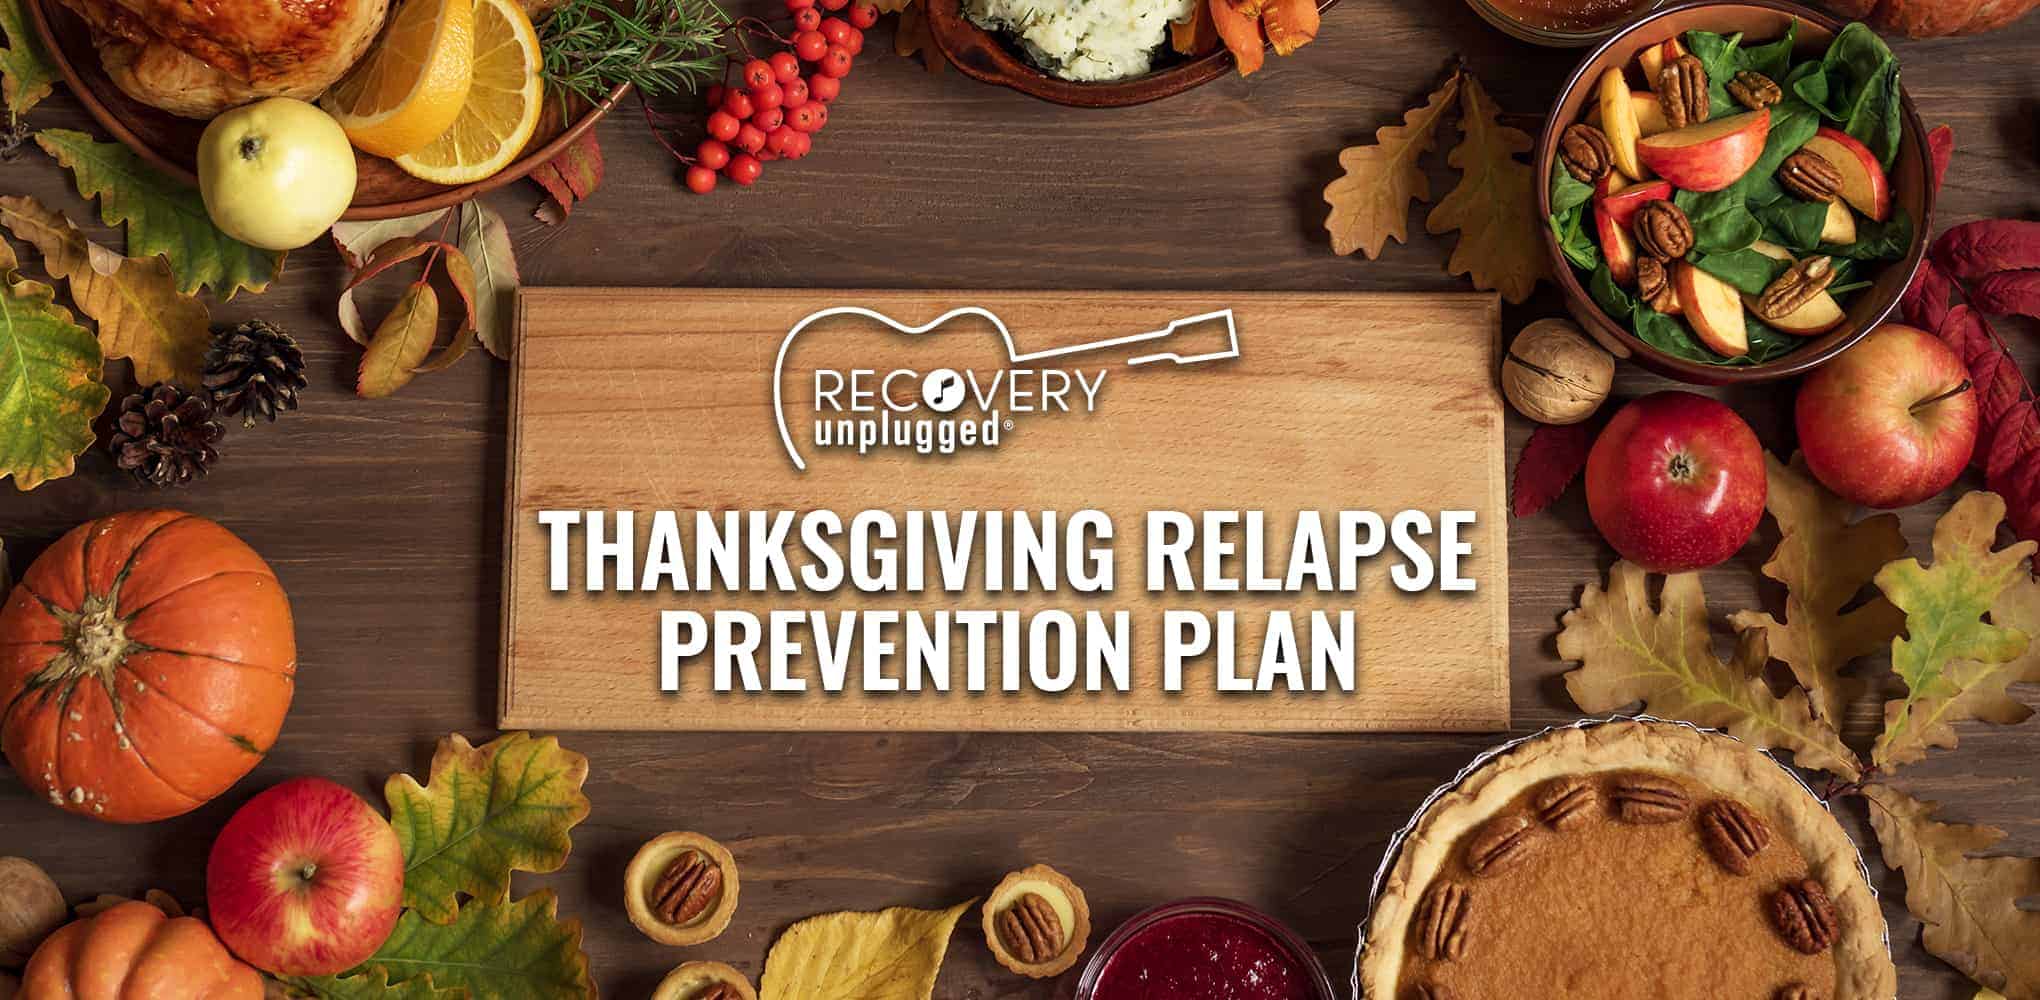 Avoiding Relapse during Thanksgiving